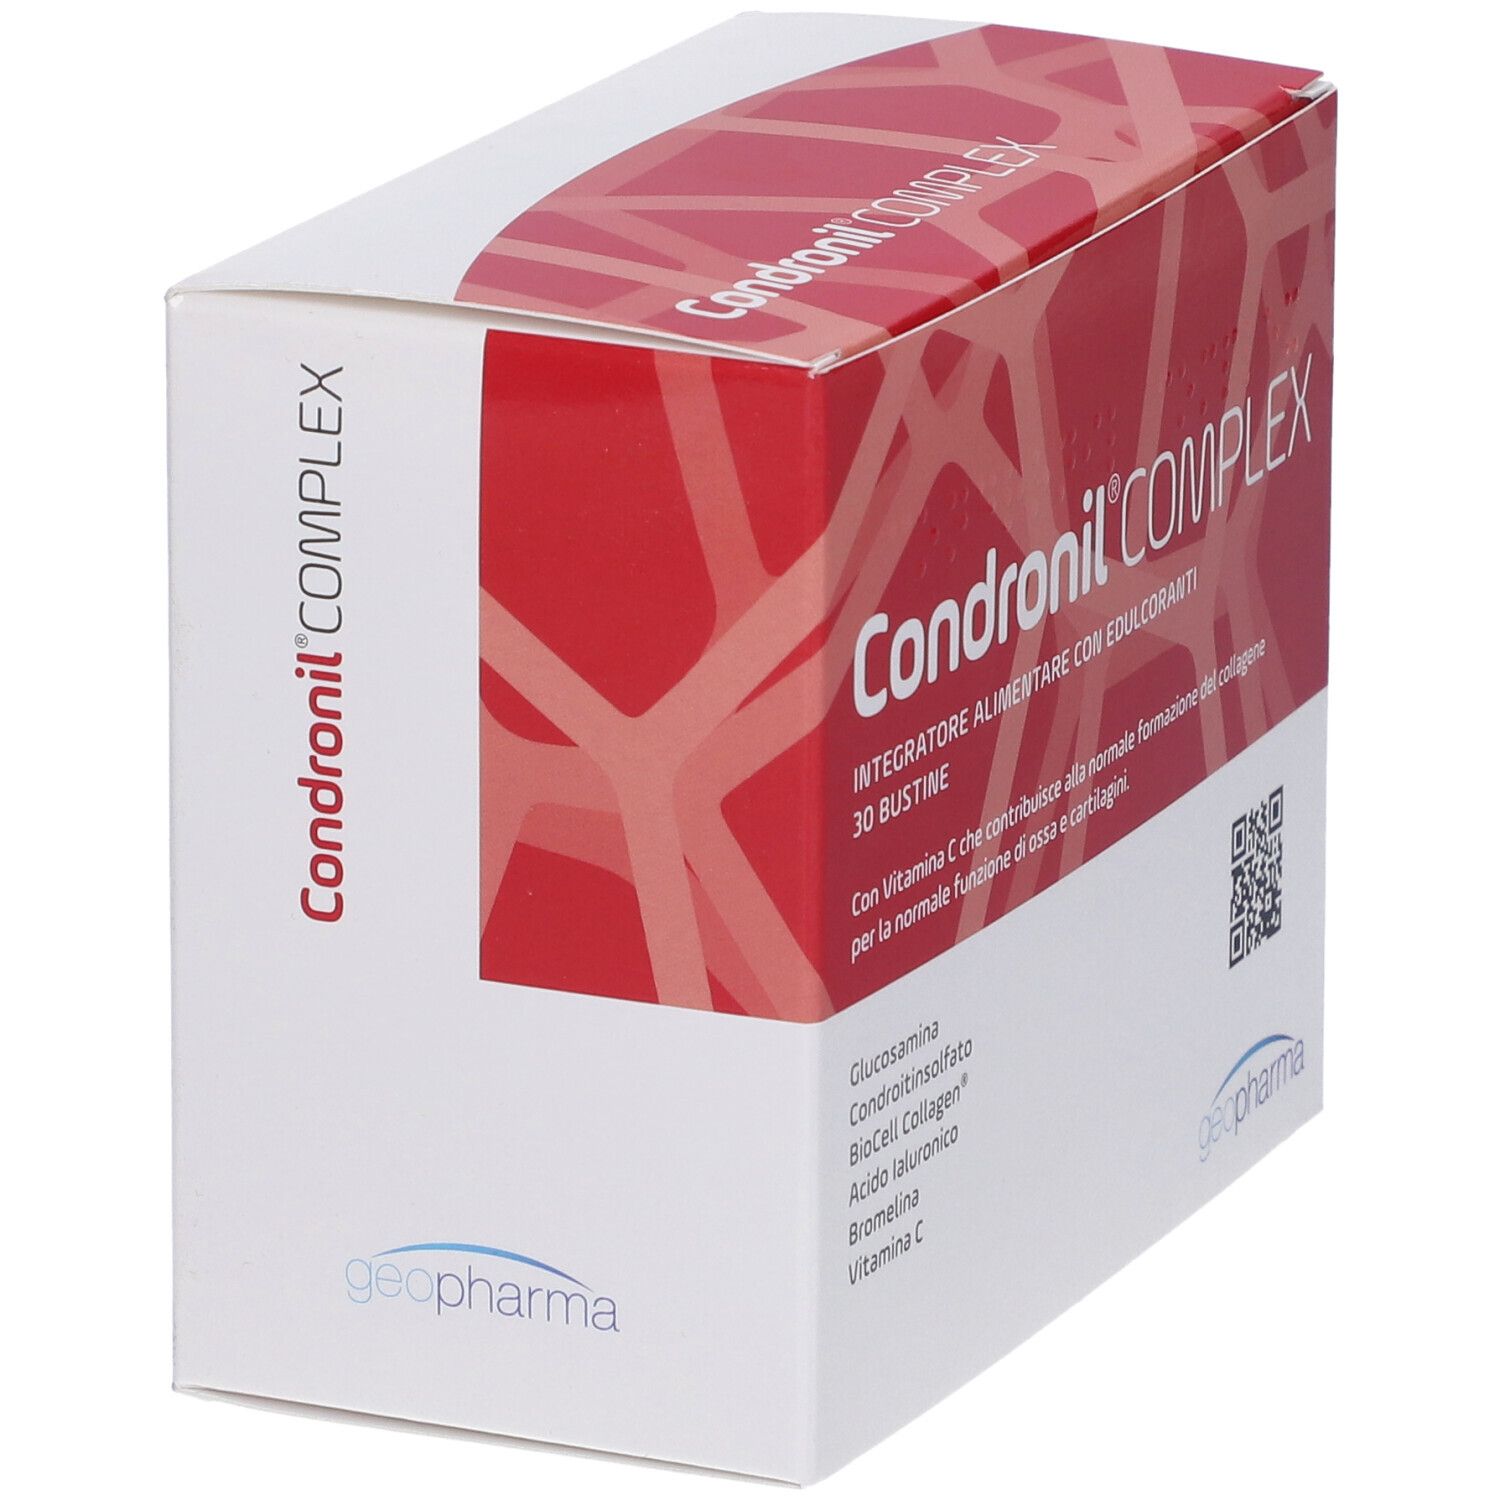 Condronil® COMPLEX